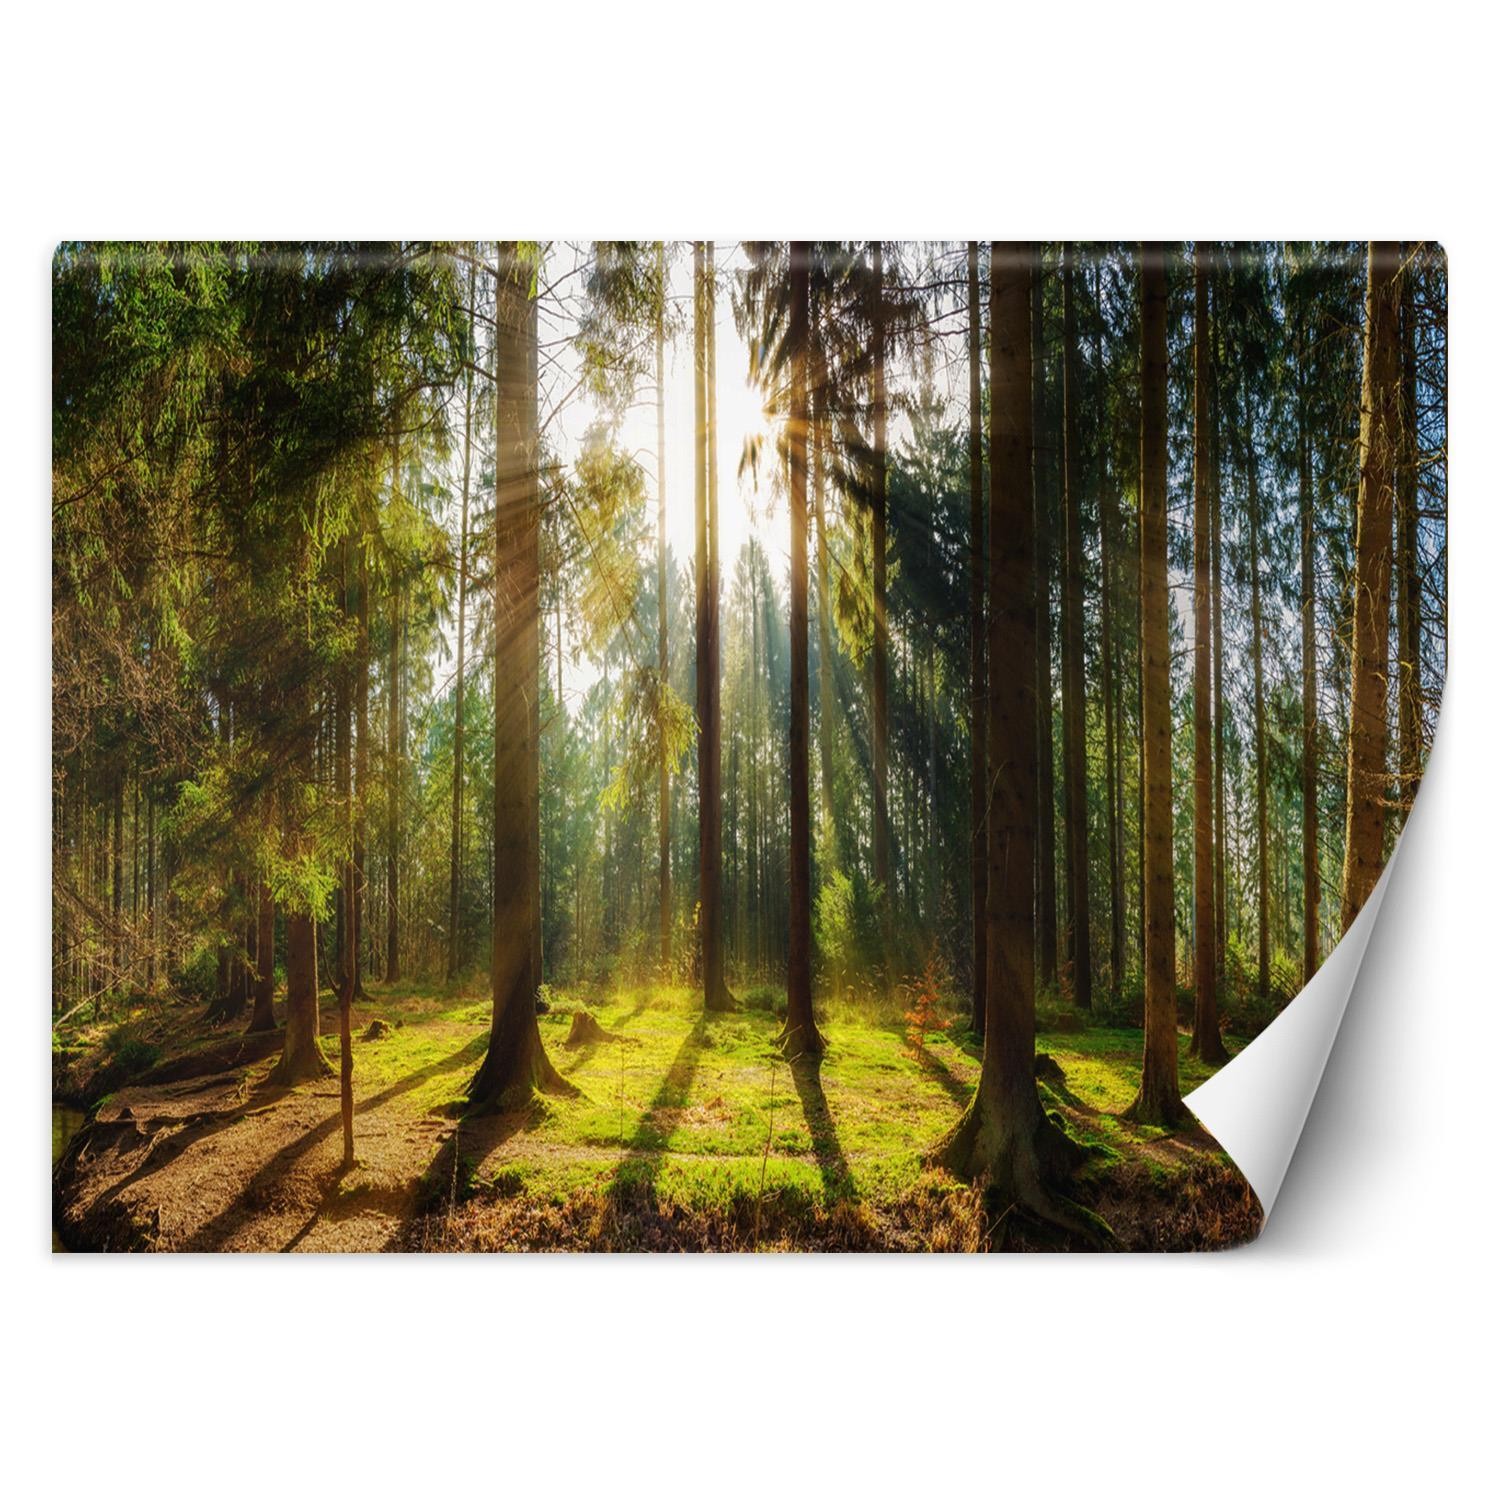 Trend24 – Behang – Bos In De Zon – Vliesbehang – Fotobehang Natuur – Behang Woonkamer – 350×245 cm – Incl. behanglijm